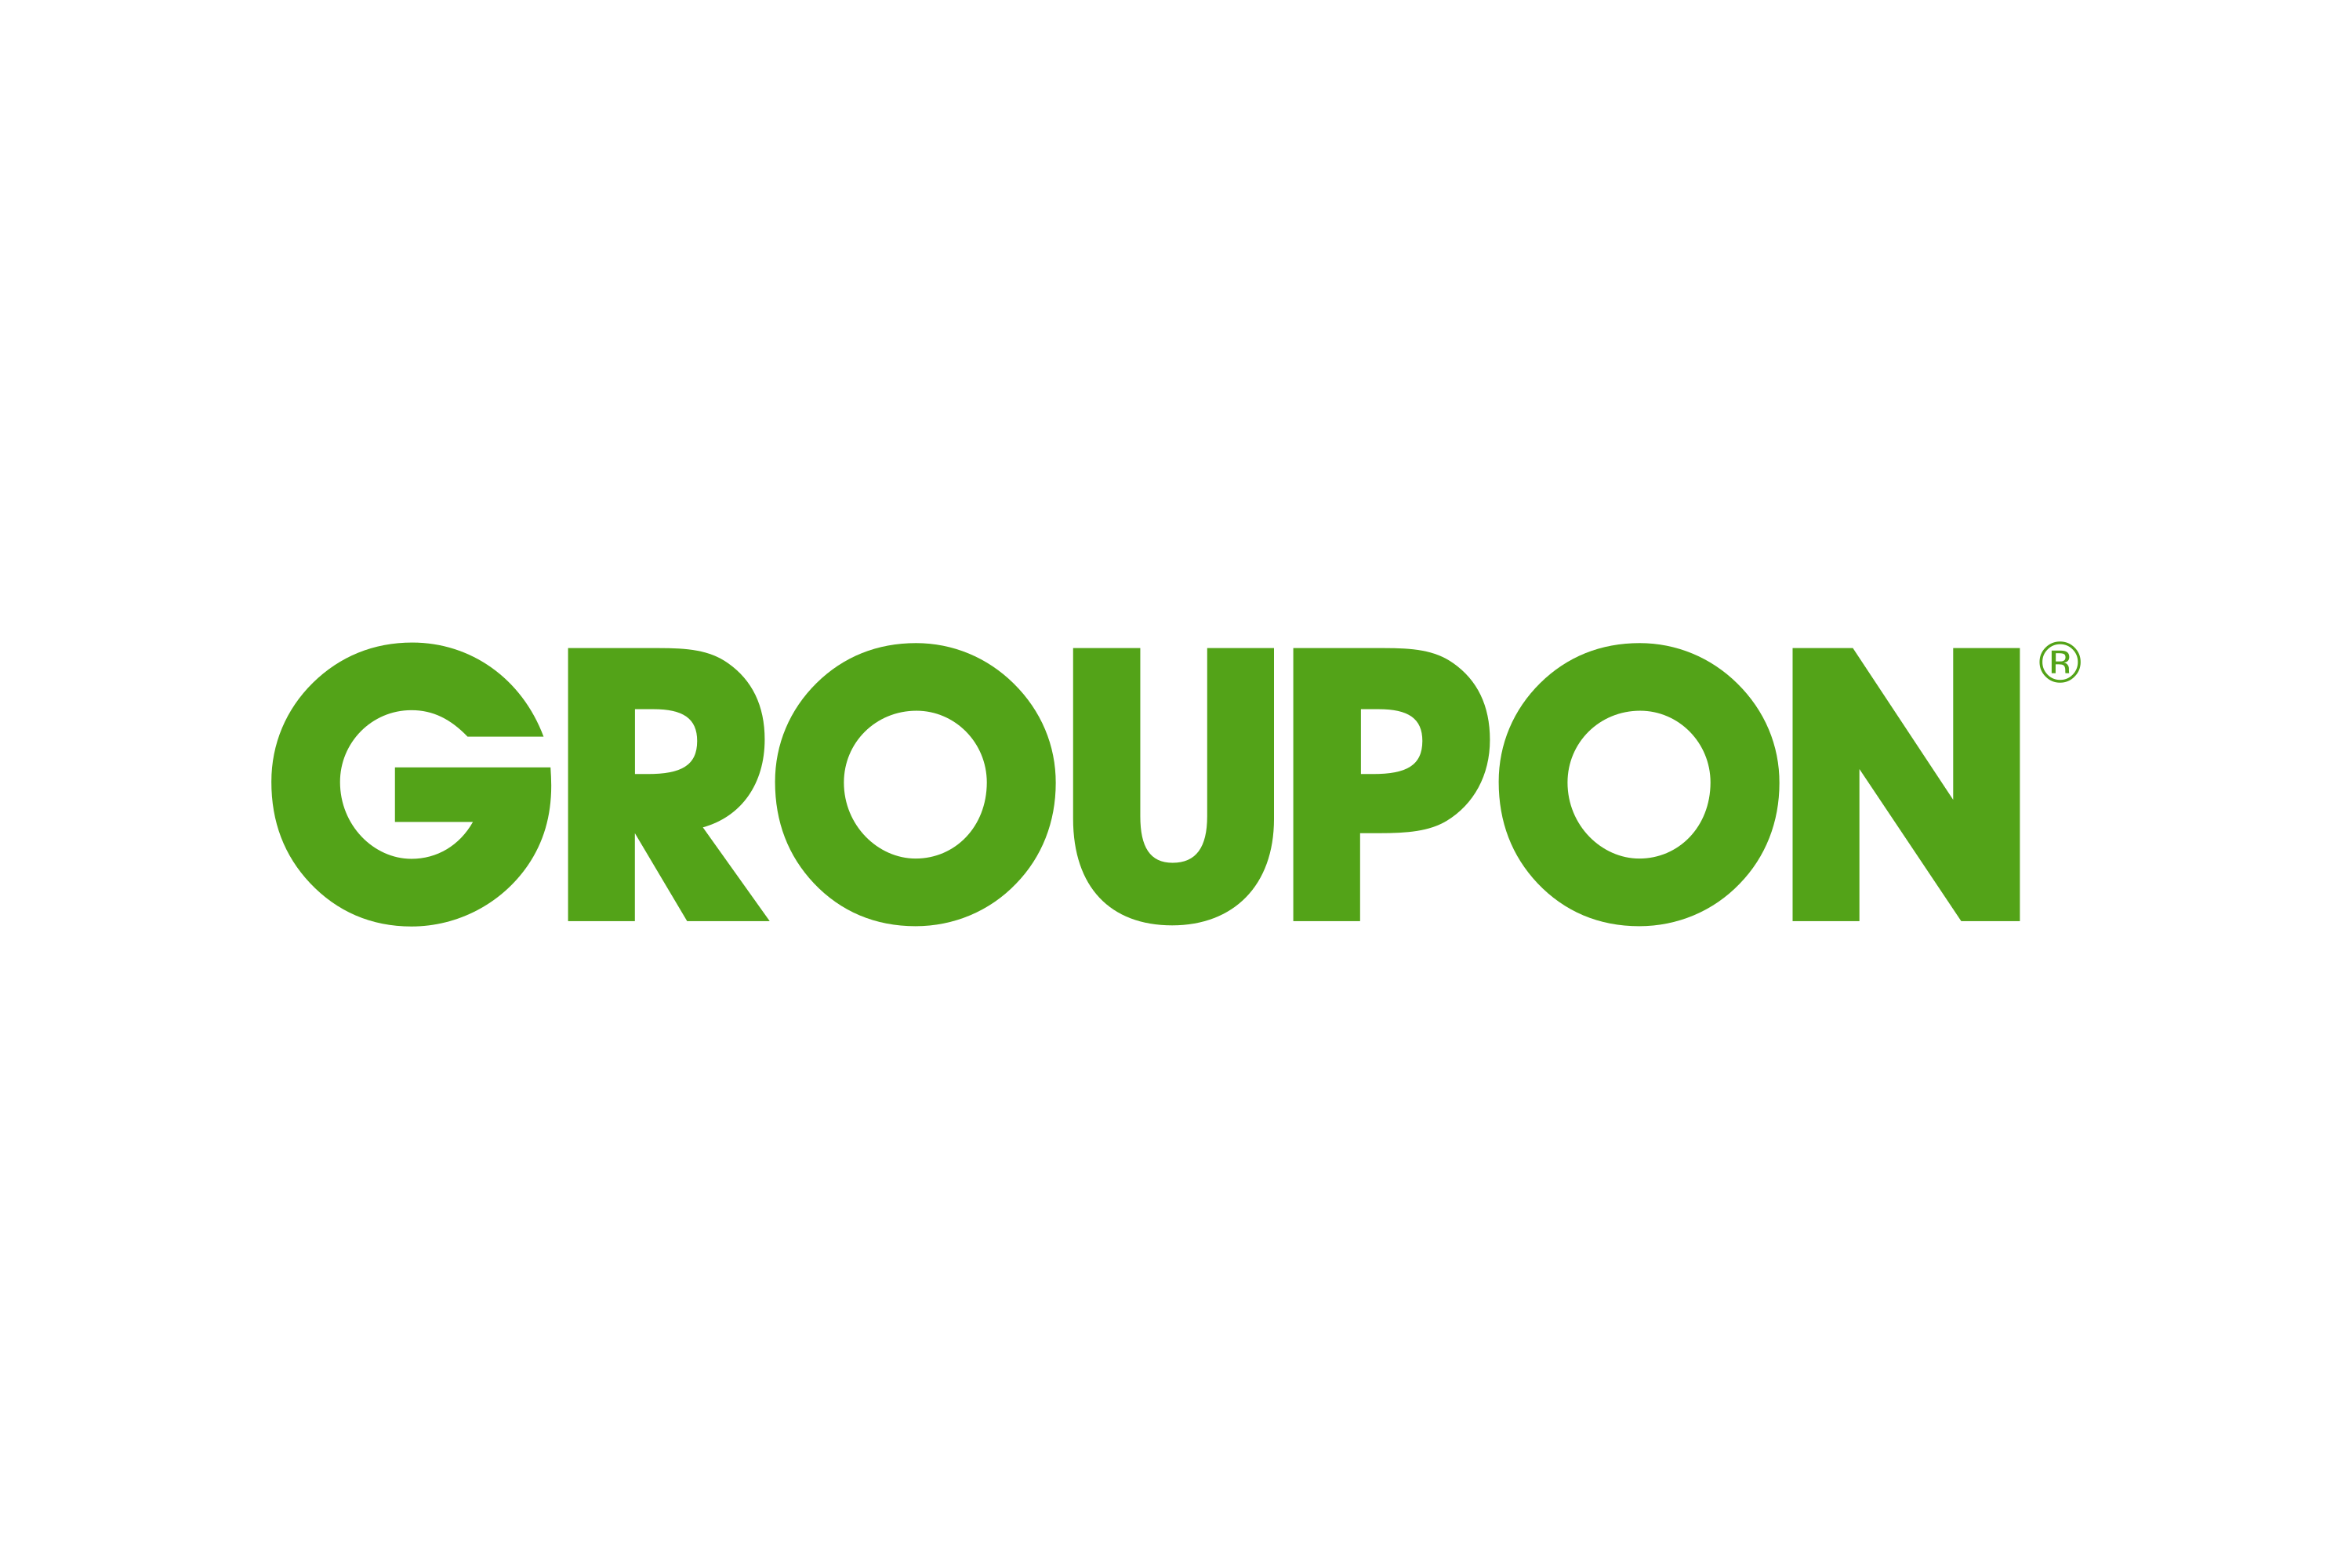 Groupon - Групон - скидочный сервис